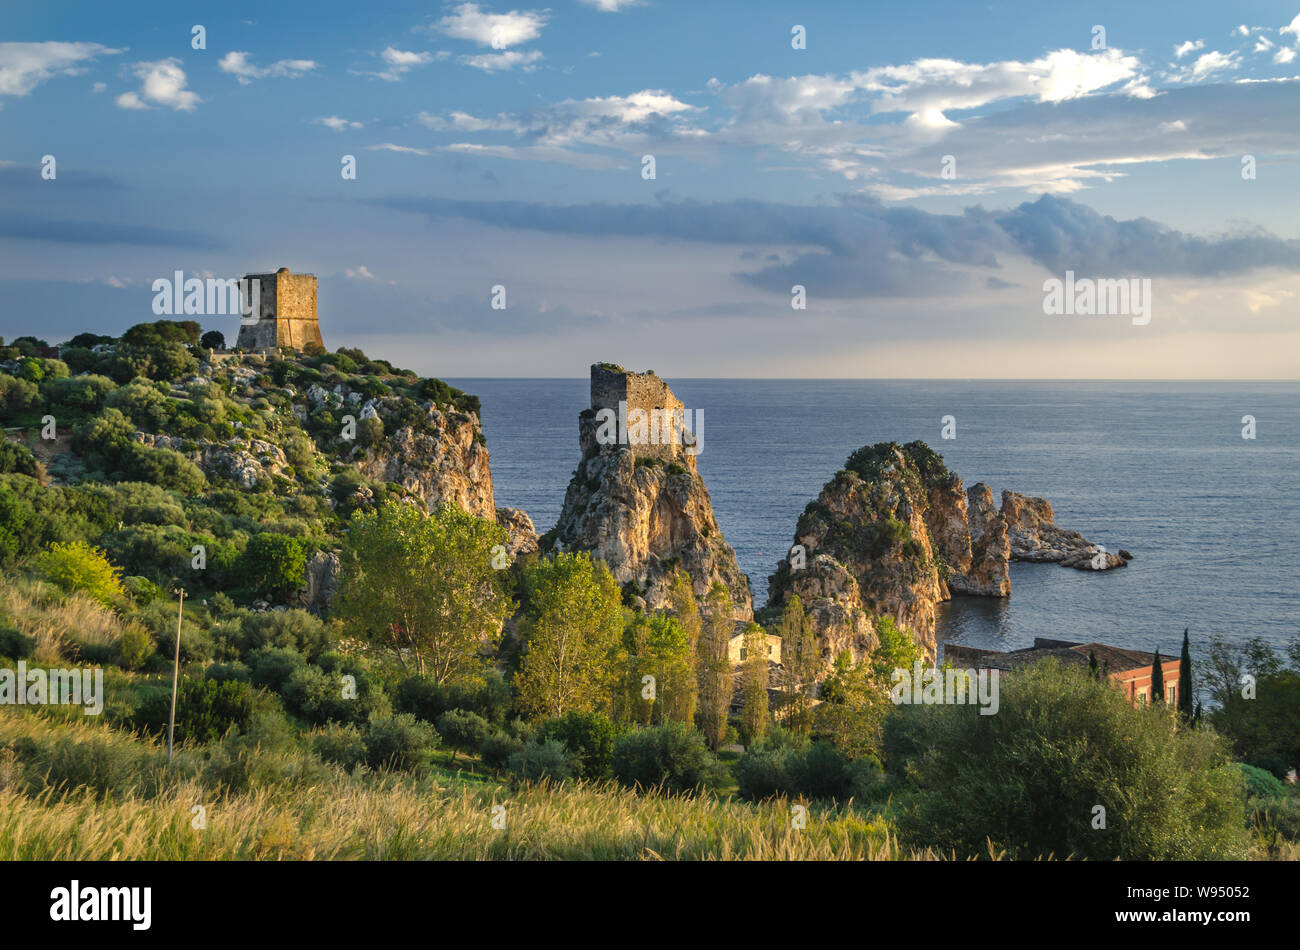 Fairytale simile nella torre di Scopello, tonnara e faraglioni di Sopello, bellissimo paesaggio e paesaggi marini della Sicilia, Italia Foto Stock